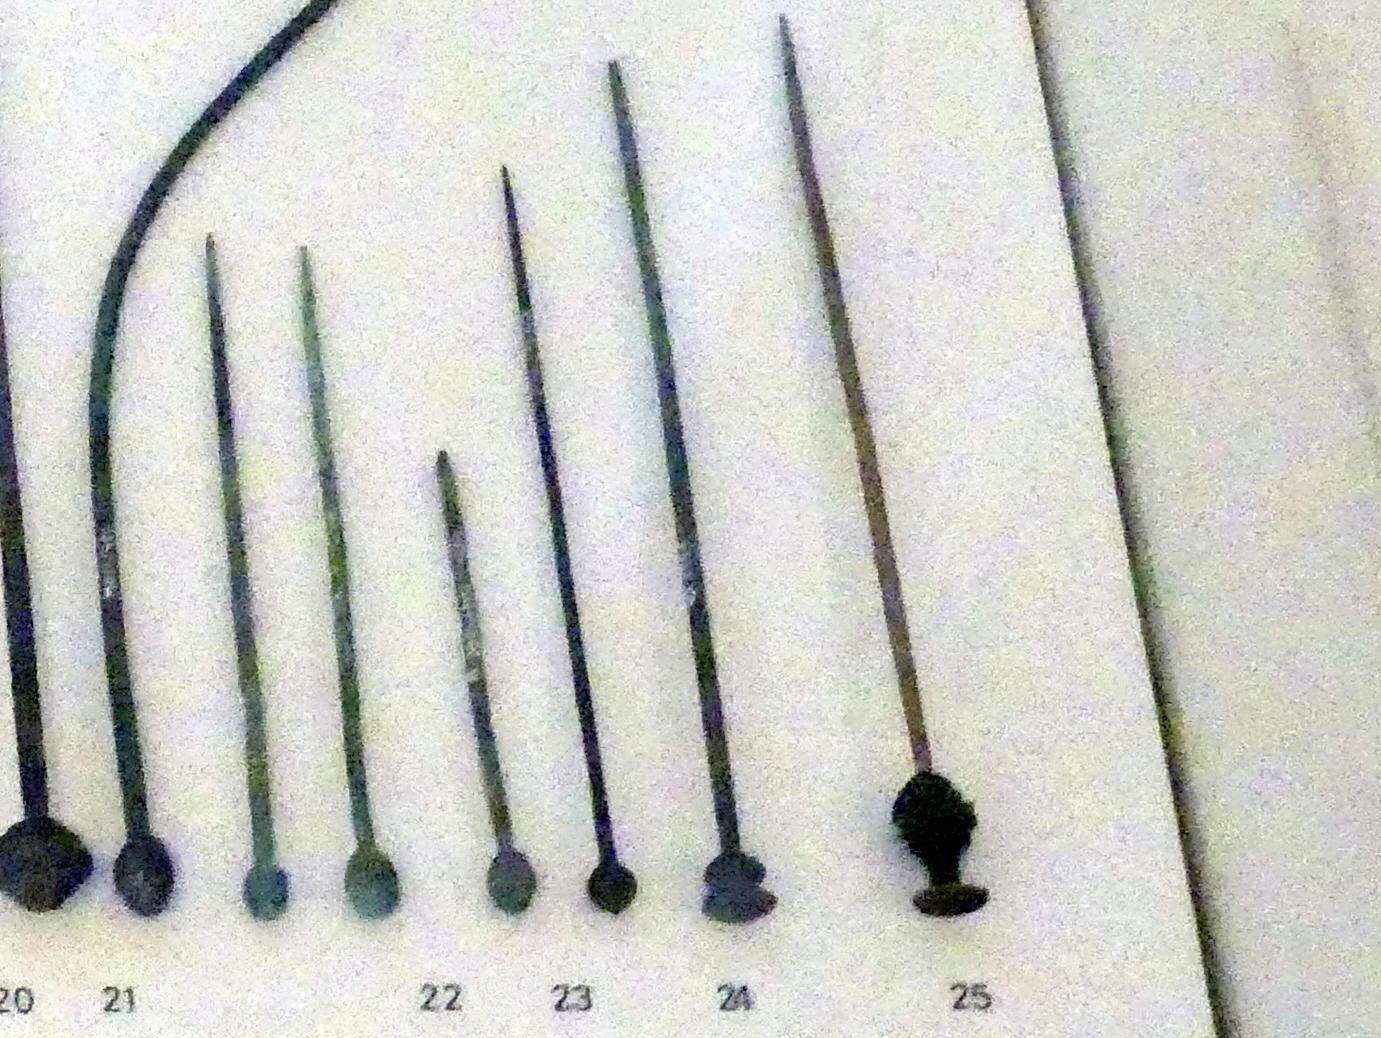 Vasenkopfnadel, Bronzezeit, 3365 - 700 v. Chr., Bild 1/2